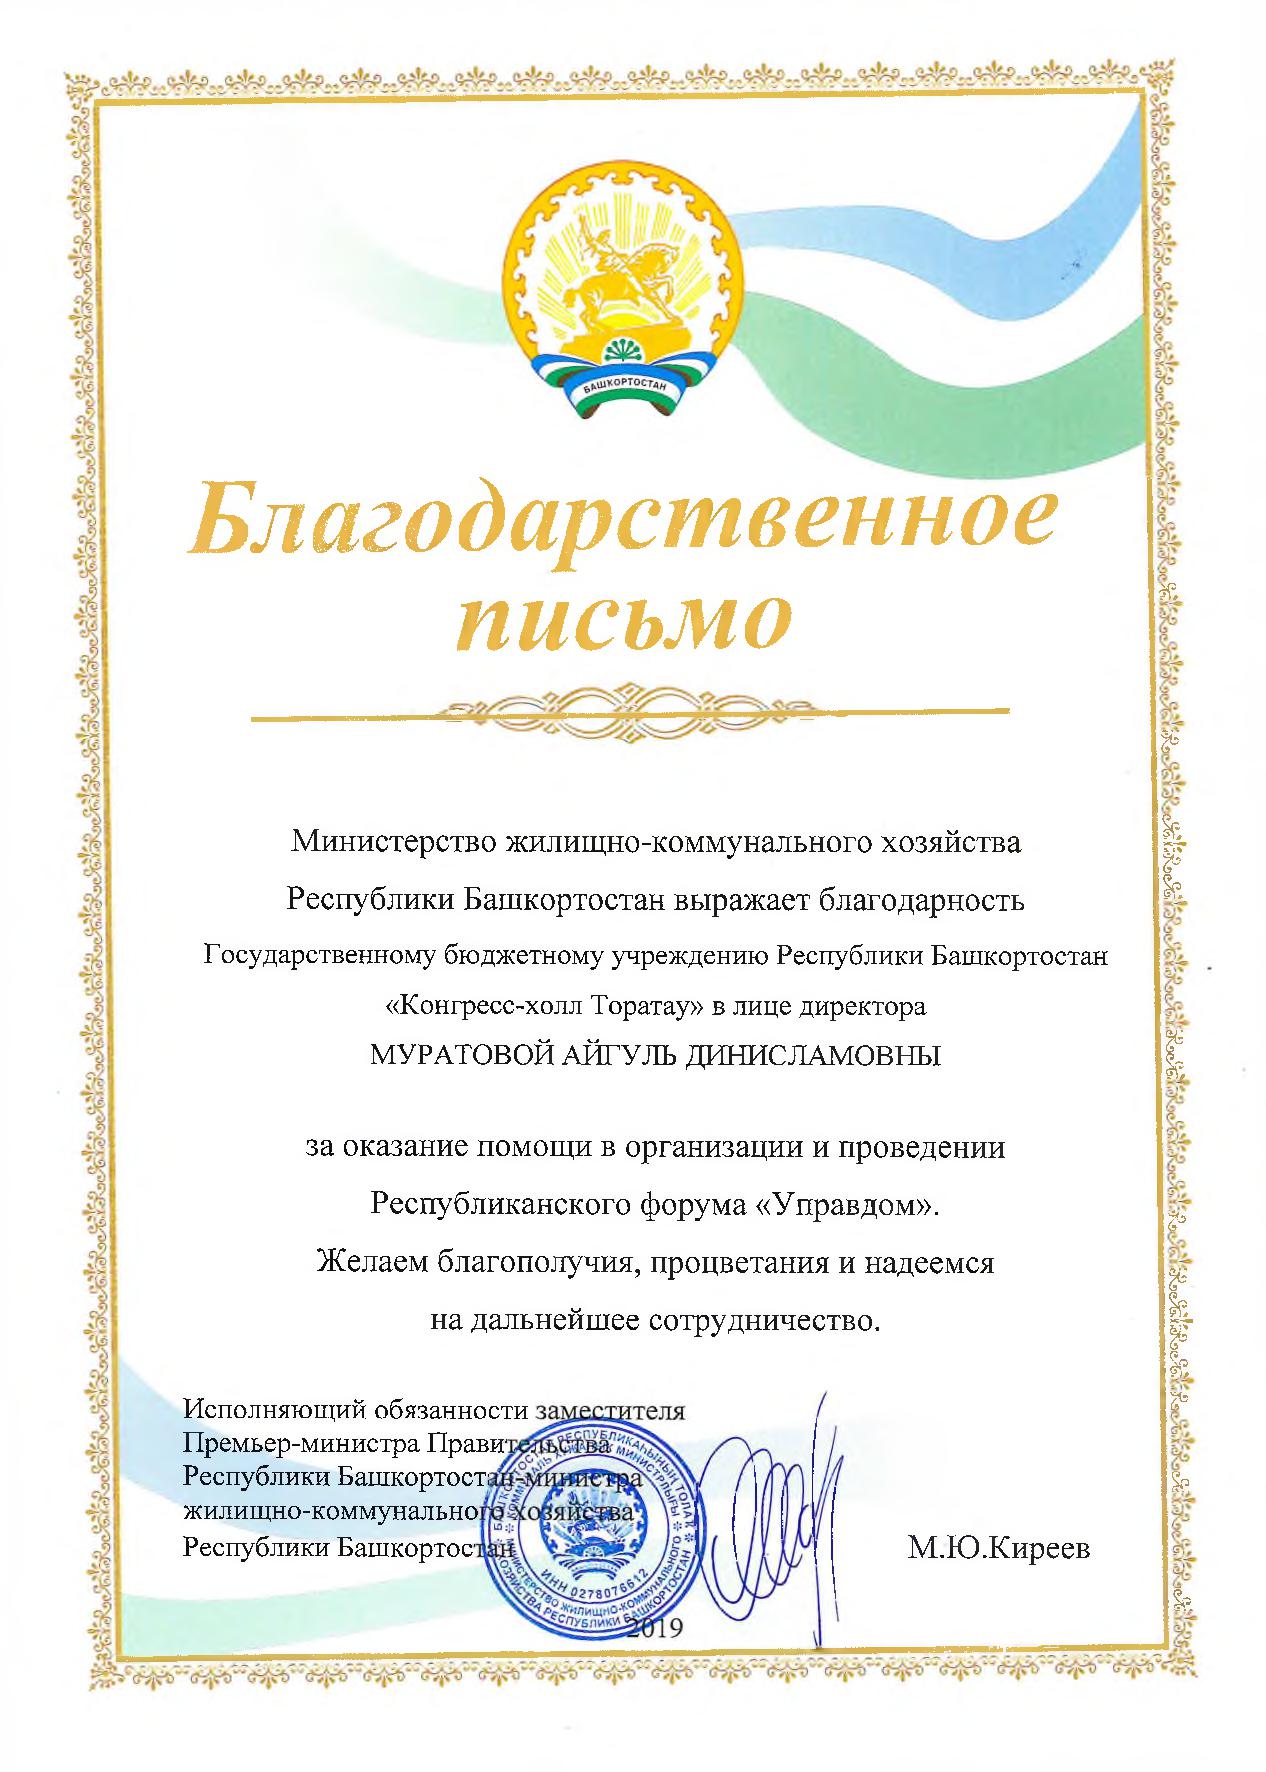 Благодарность от Министерства жилищно-коммунального хозяйства Республики Башкортостан